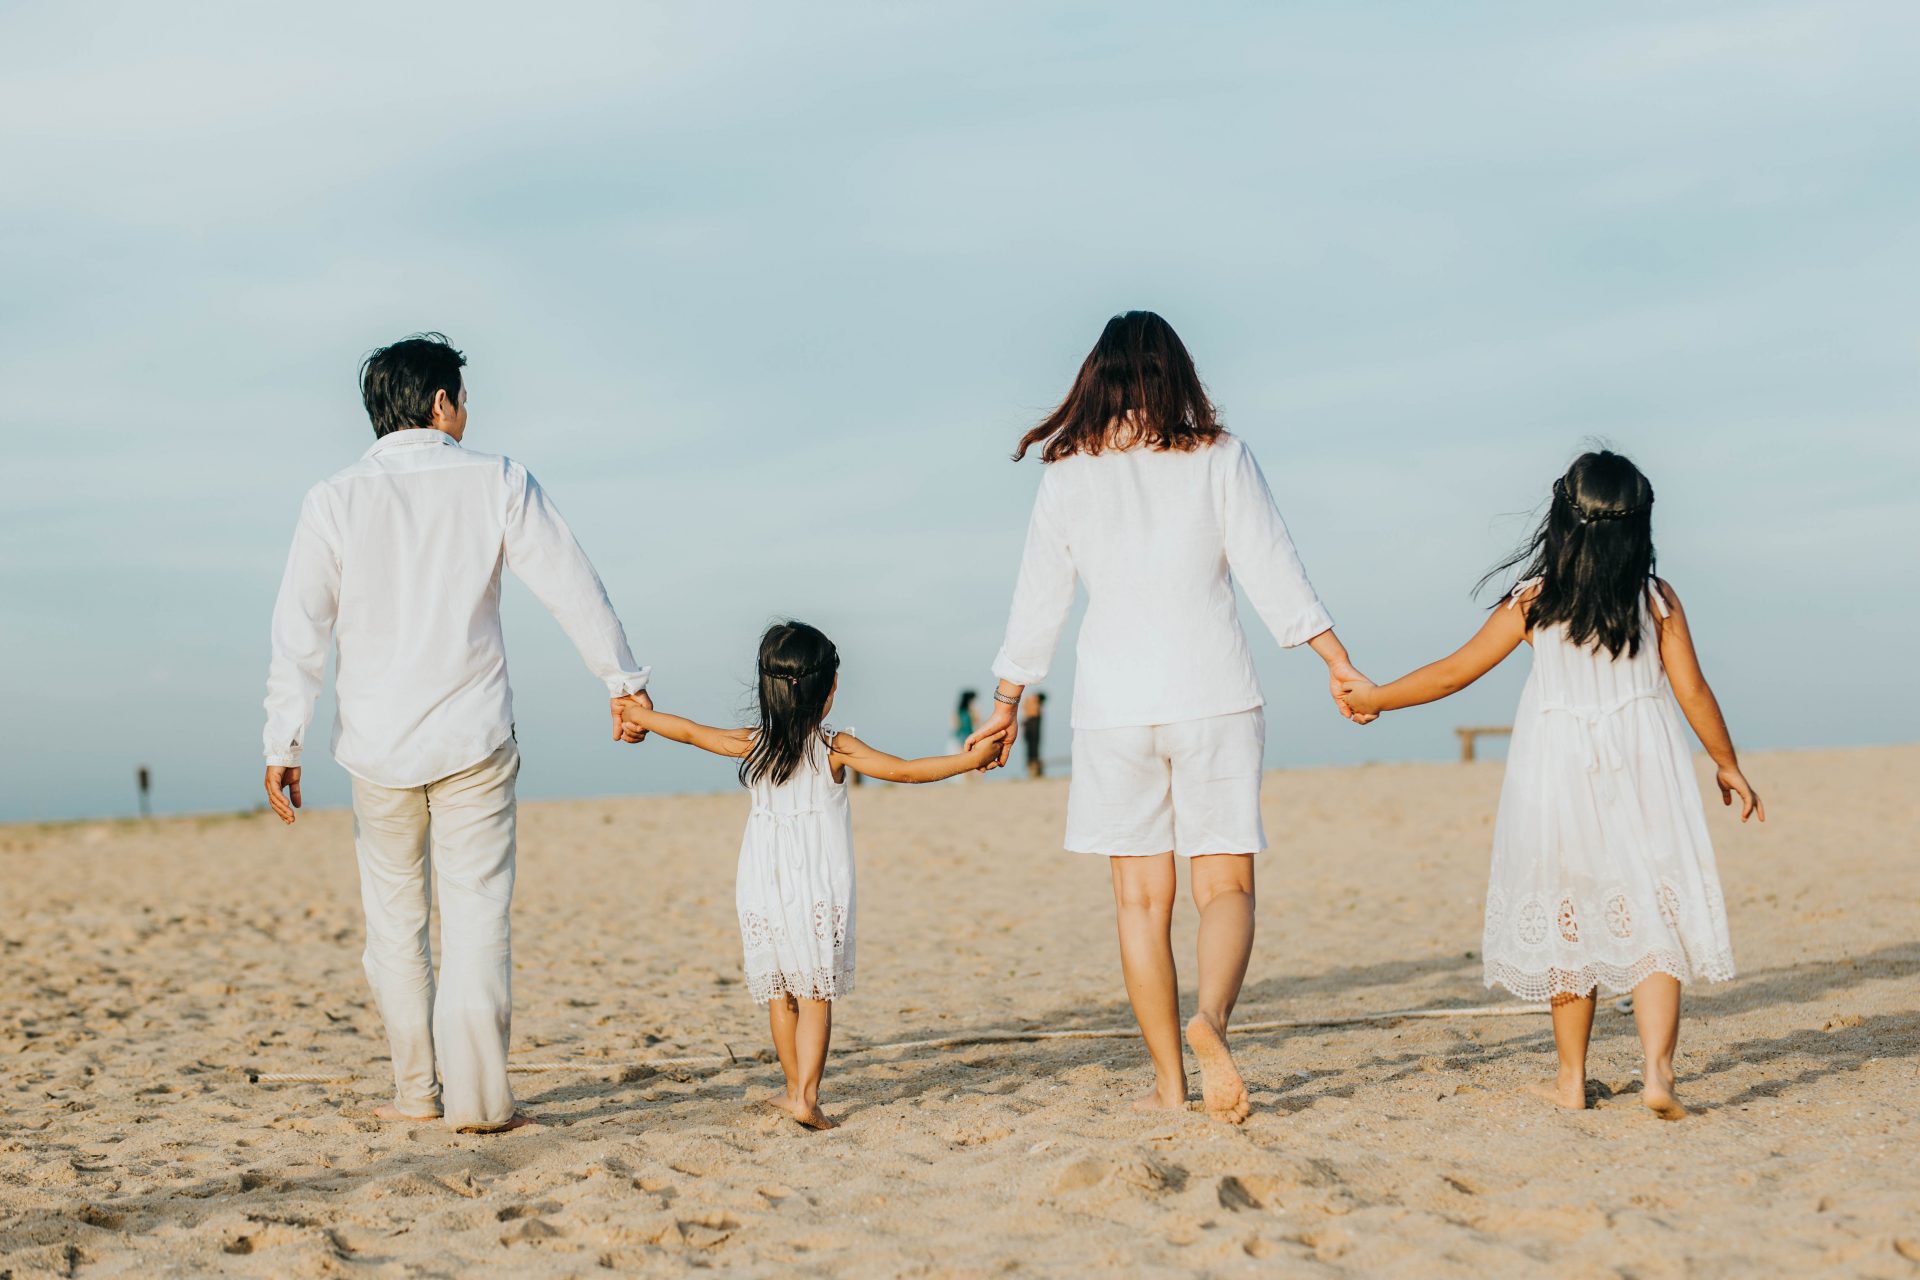 Hình ảnh gia đình cùng tạo dáng trên bãi biển trong ánh hoàng hôn sẽ làm bạn say mê và cảm thấy hạnh phúc. Hãy xem ngay để lưu giữ những khoảnh khắc đáng nhớ bên gia đình của mình.